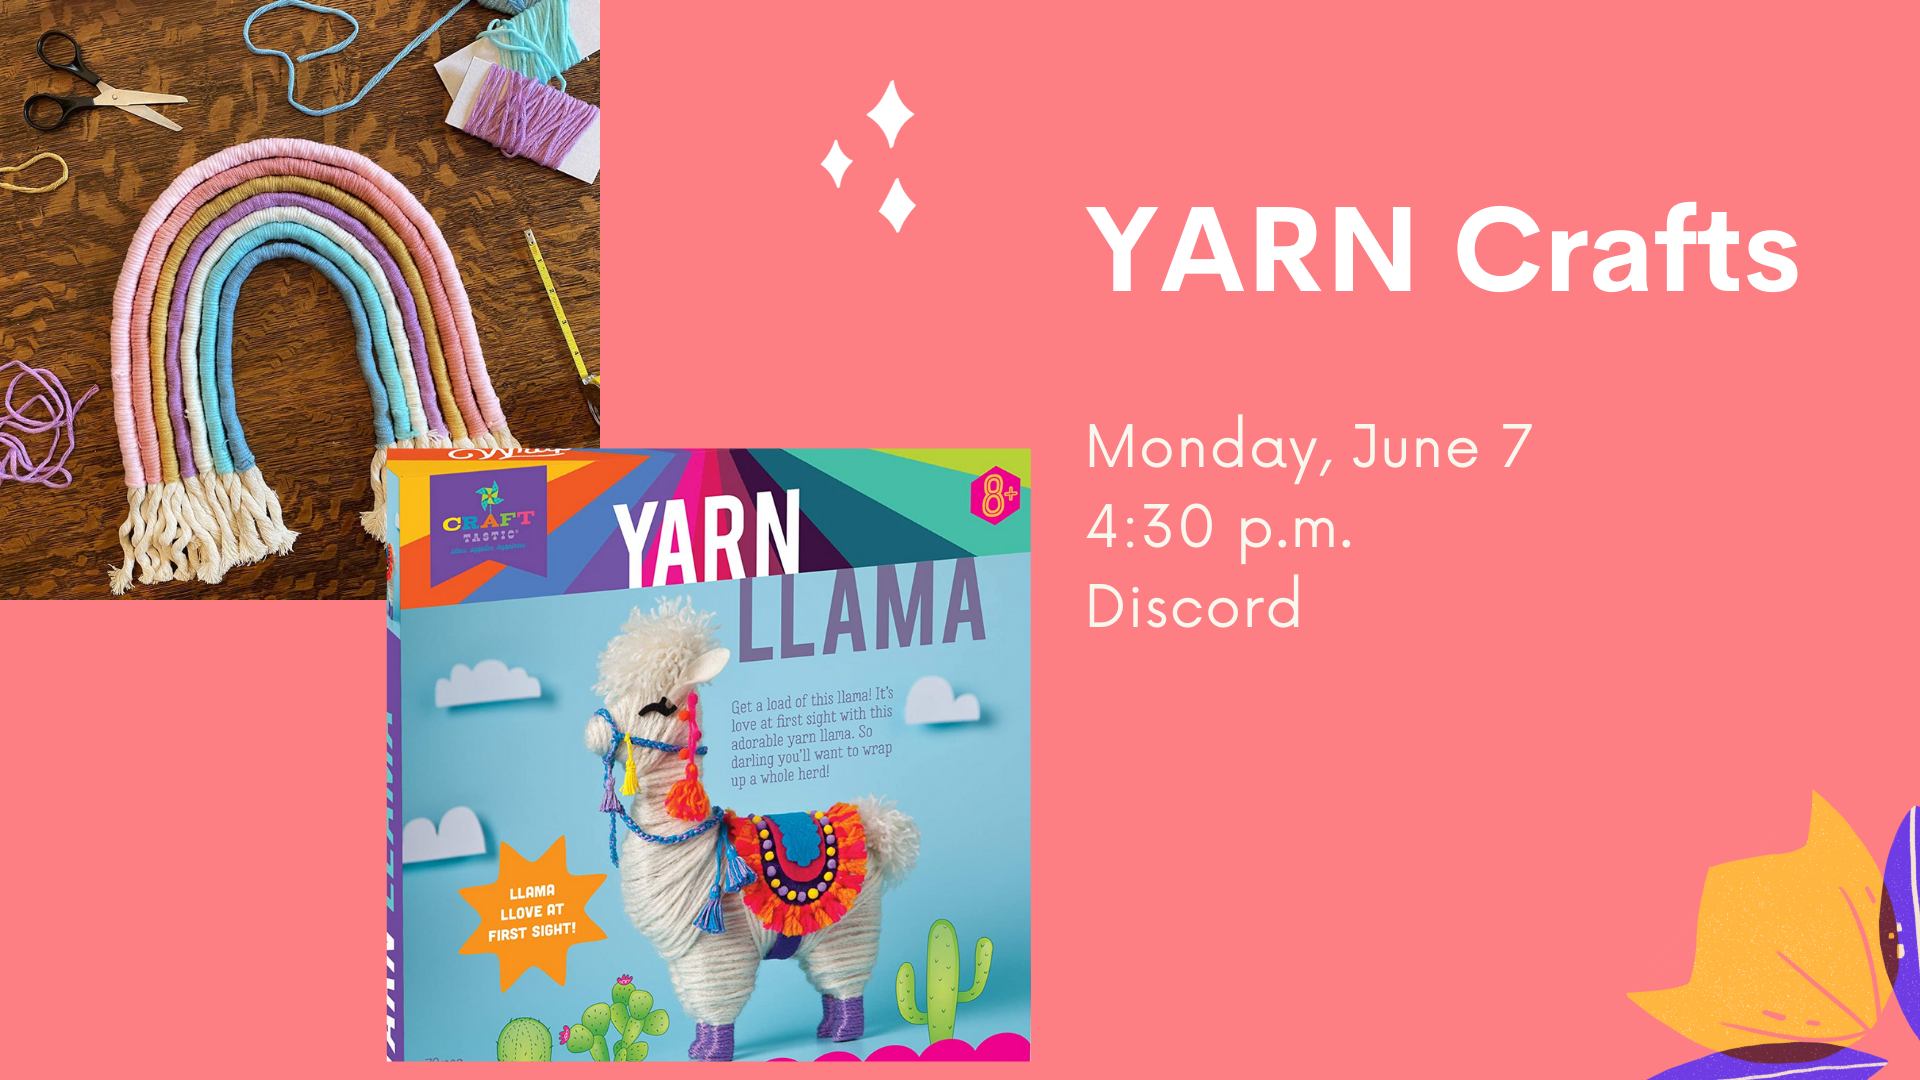 Yarn crafts flyer